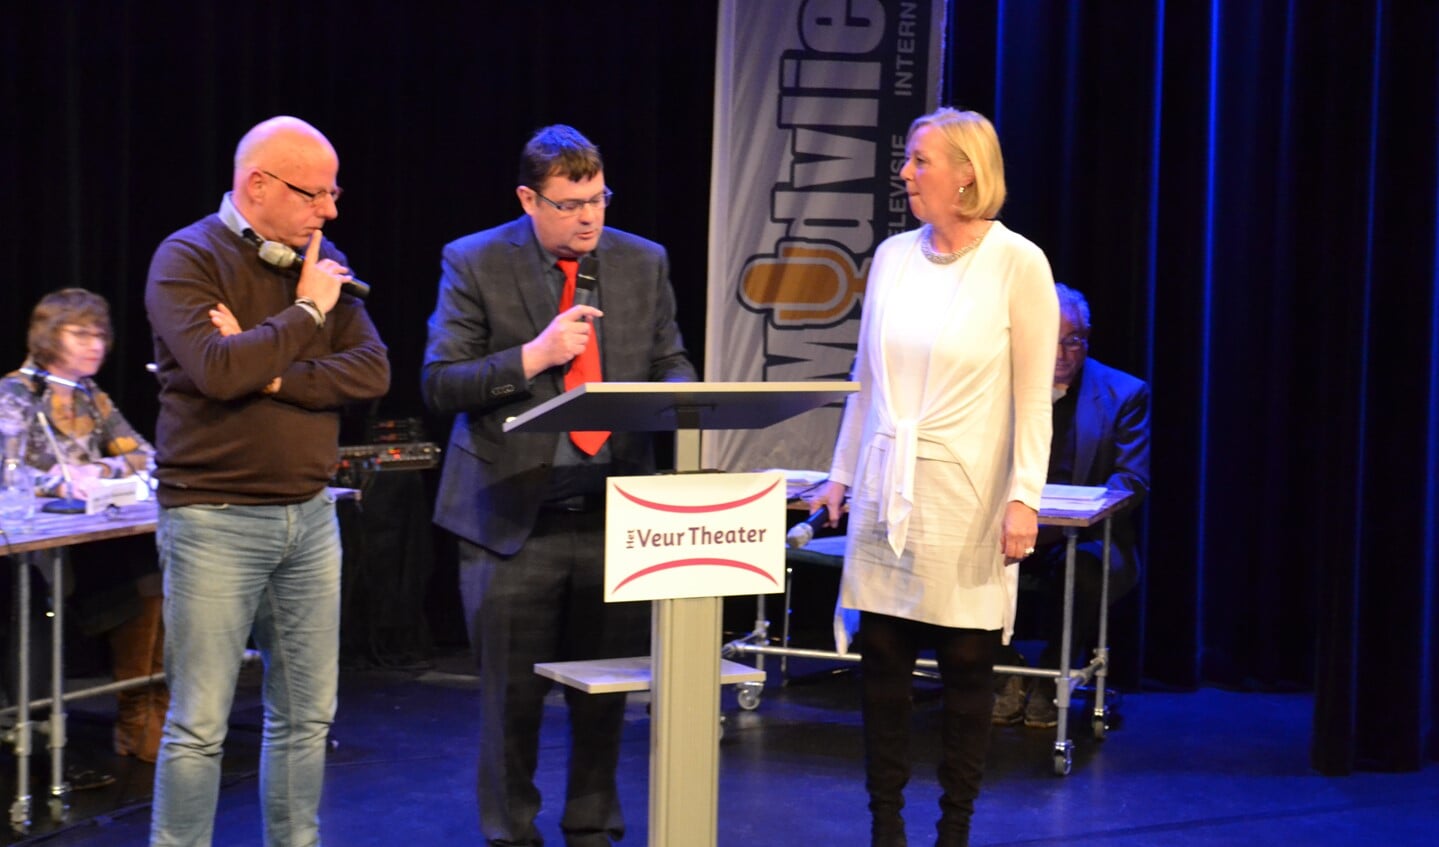 De lijsttrekkers Hans Peter Klazenga (GBLV) en Astrik van Eekelen (VVD) stonden tegenover elkaar tijdens het een op een debat. 